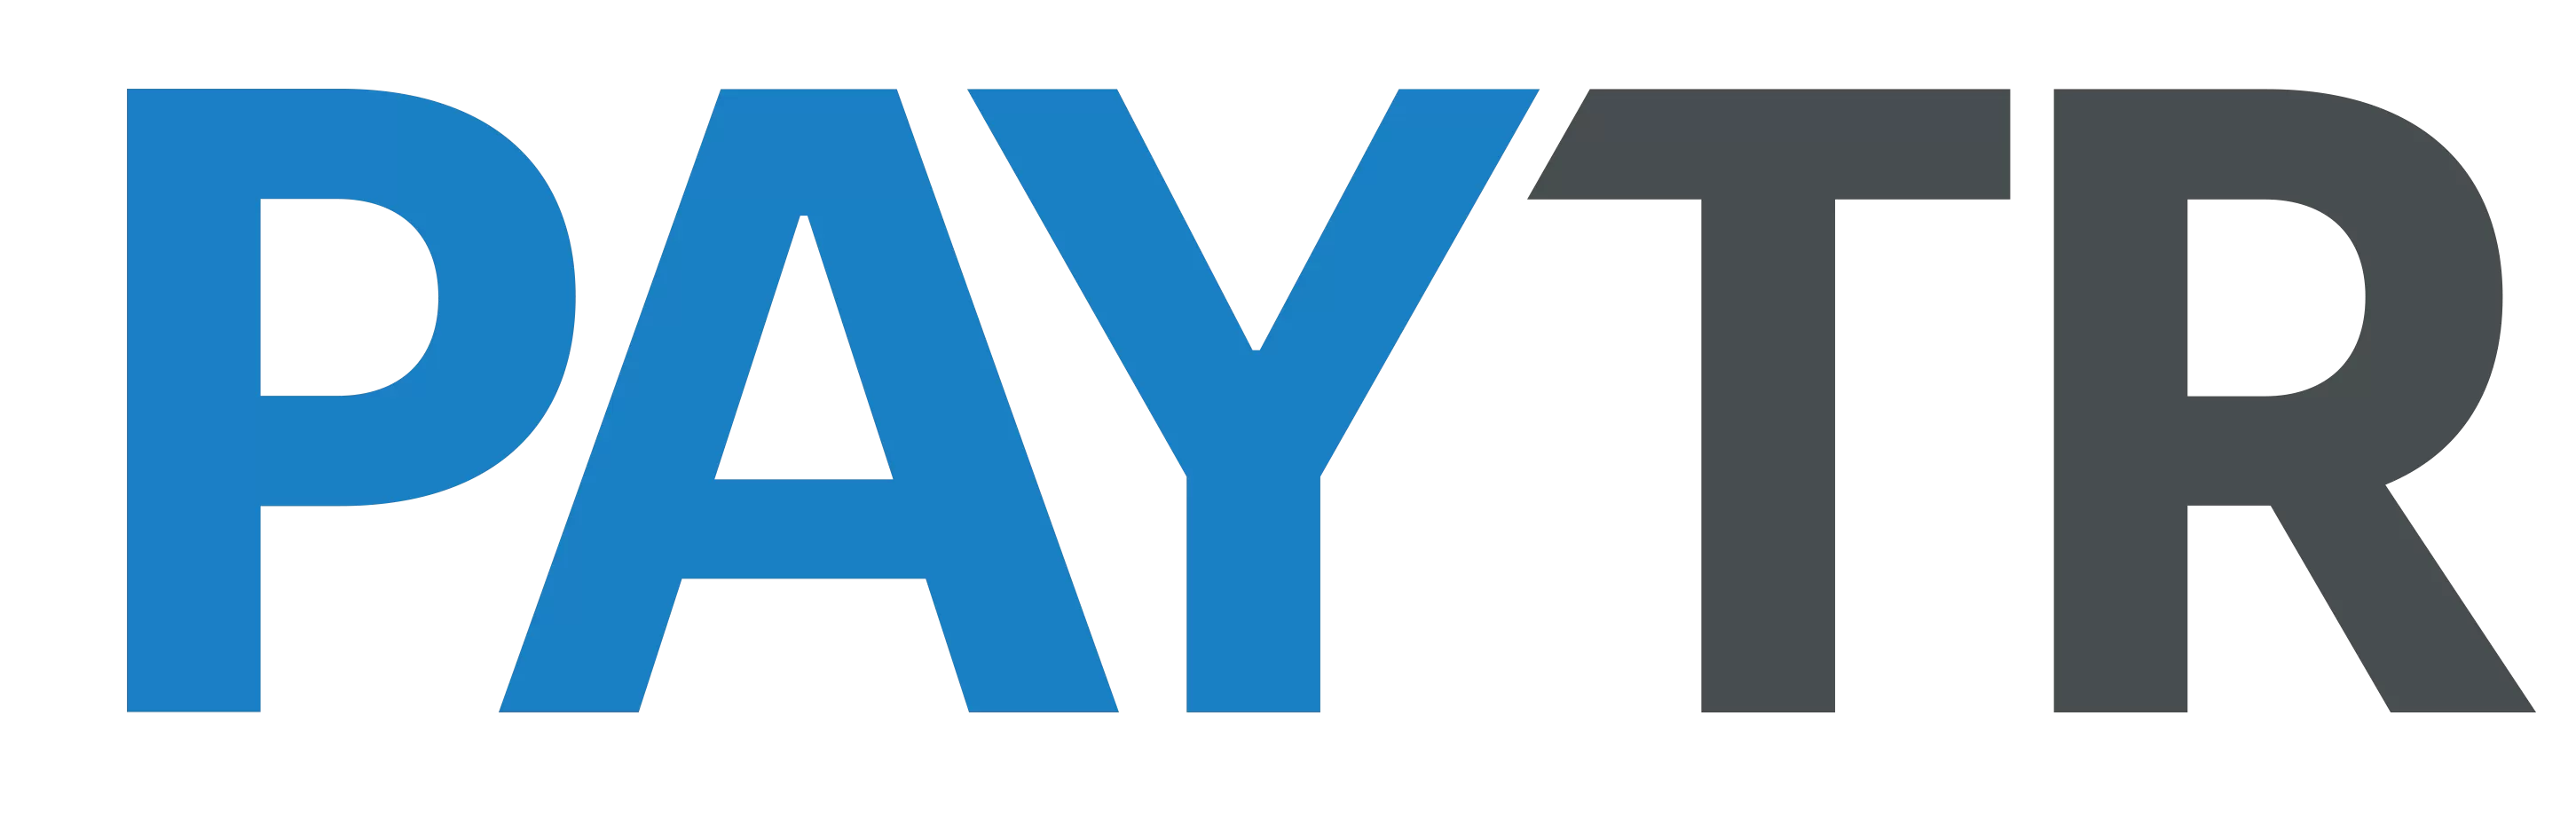 Paytr logo